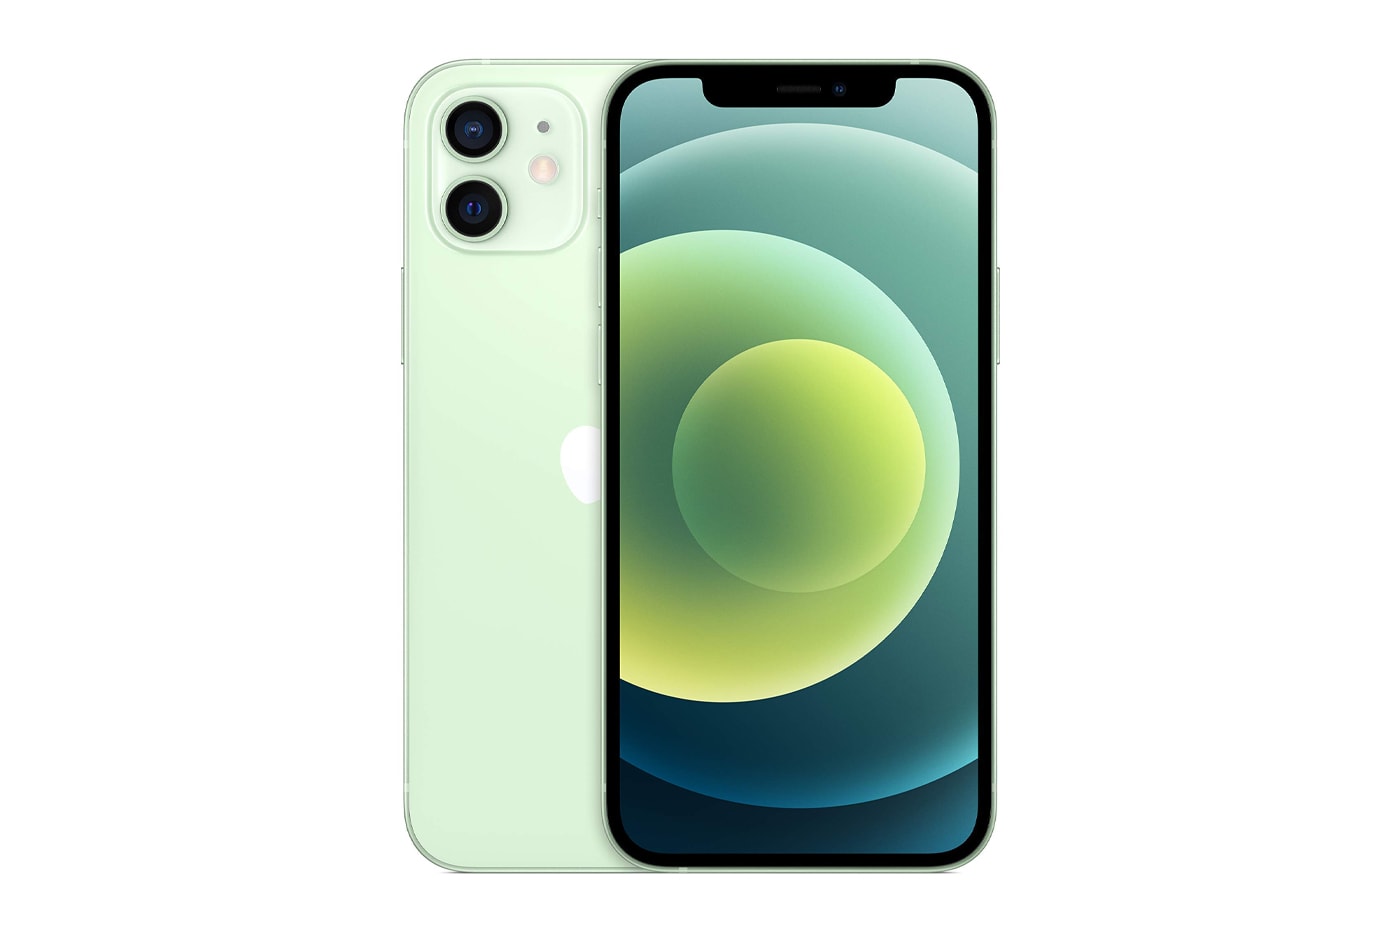 アイフォーン15とアイフォーン15プラスに新色としてライトグリーンが追加か iPhone 15 Plus Report New Green Colorway Shades Colors Apple Rumors New Phone Smartphone Line Offerings Prediction Analysis